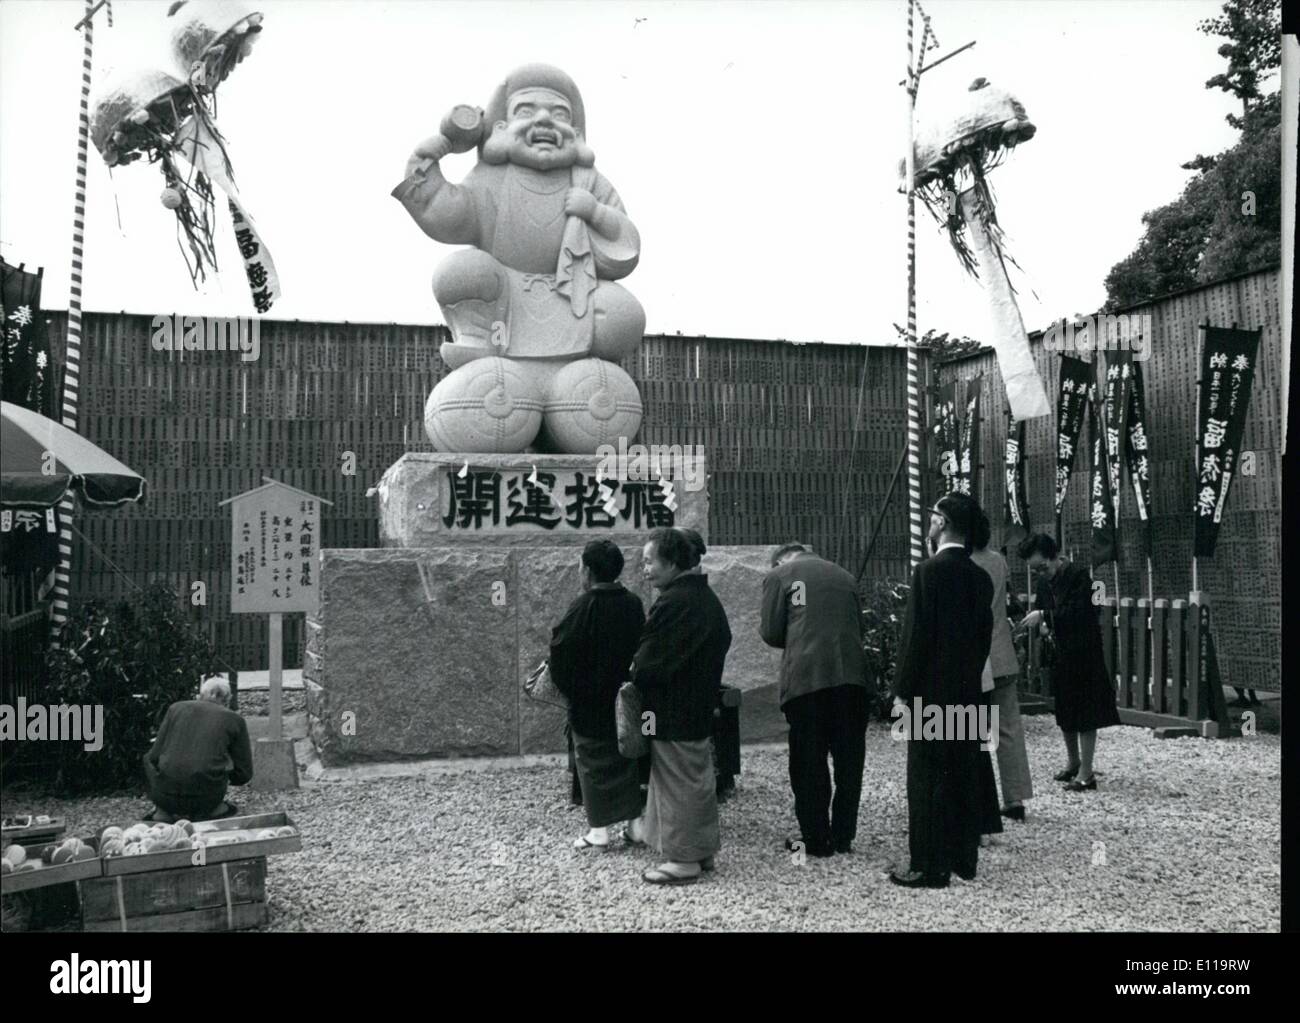 5. Mai 1976 - Gott des Reichtums wiegt 85 Tonnen: eine steinerne Bild '' Daikoku'', die Gott f Reichtum, 7 Meter hoch und wiegt 85-Tonnen, hat an der Kanda Myojin-Schrein in Tokio gespendet worden. Es ist das größte Bild der '' Daikoku'' in Japan. Der Gott ist auf zwei Ballen der Reis, und halten eine Spardose sitzend dargestellt. Gruppe der japanischen erscheinen zu Gott zu beten. Stockfoto